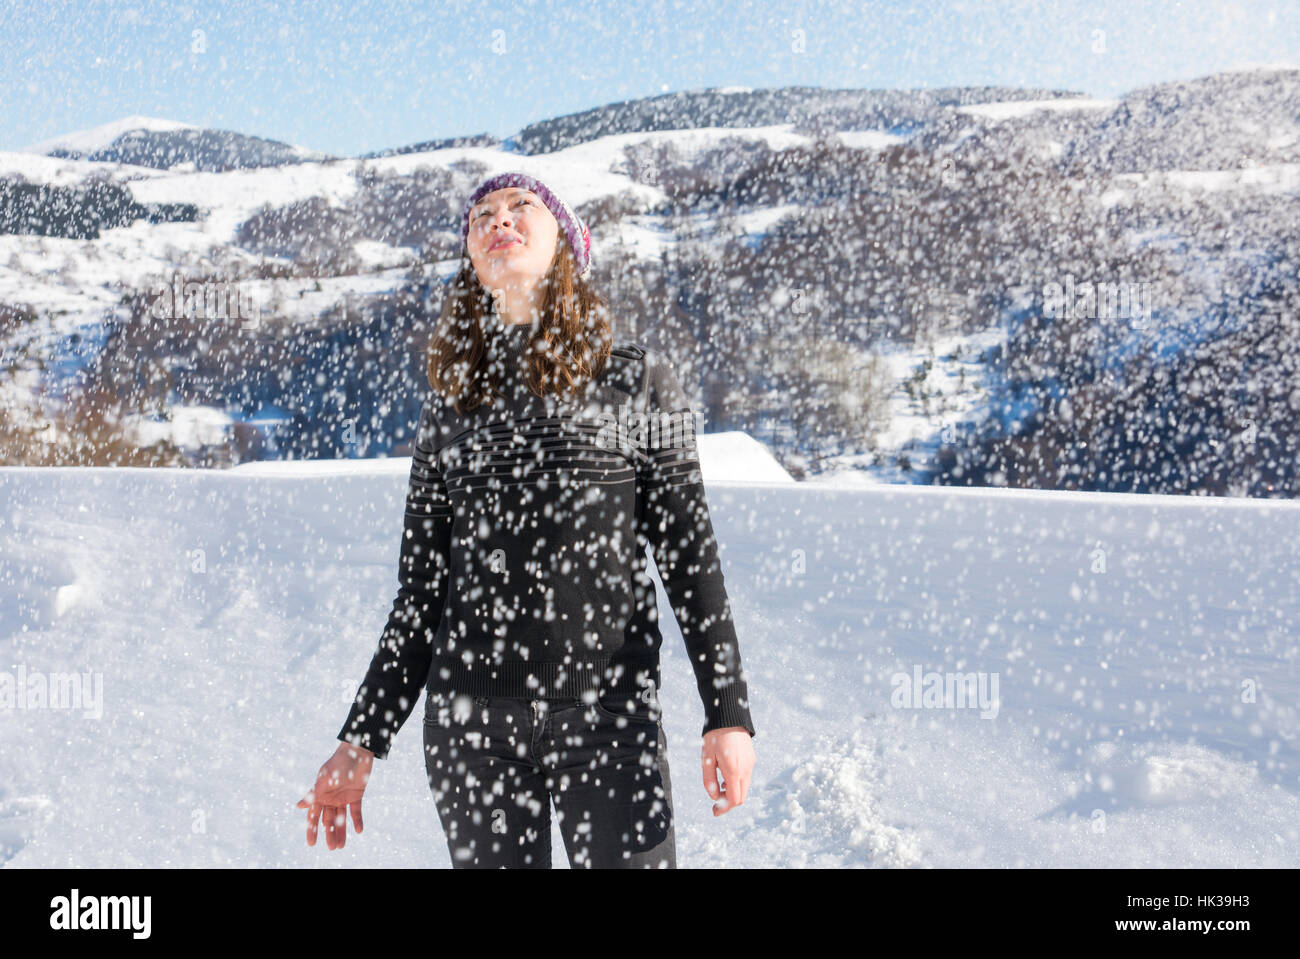 Mädchen stehen in schwerem Schnee Schneesturm auf dem Berg Stockfoto